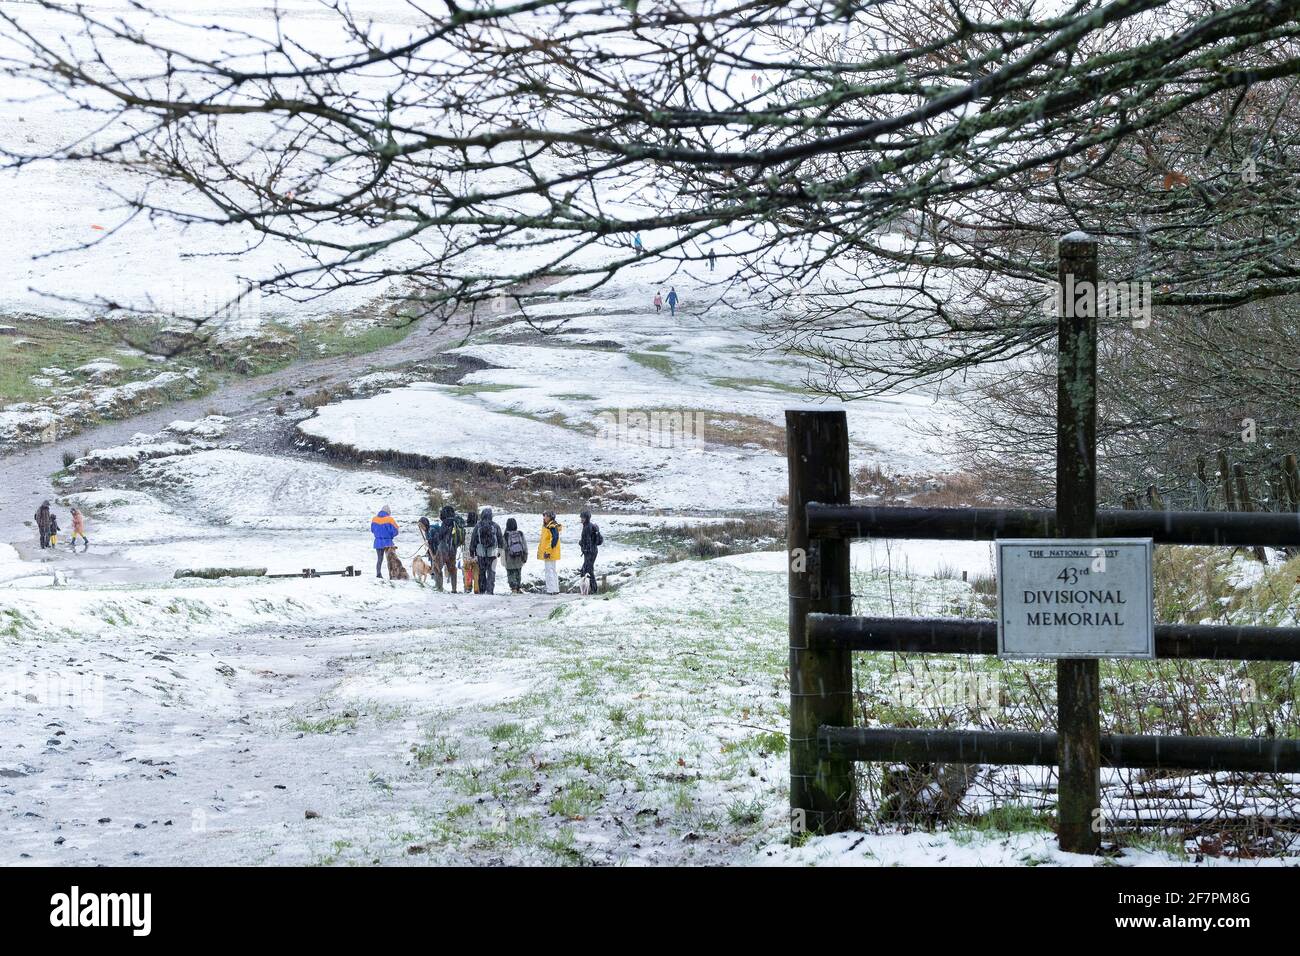 Le persone che si godono una passeggiata nella neve su Rough Tor su Bodmin Moor in Cornovaglia. Foto Stock